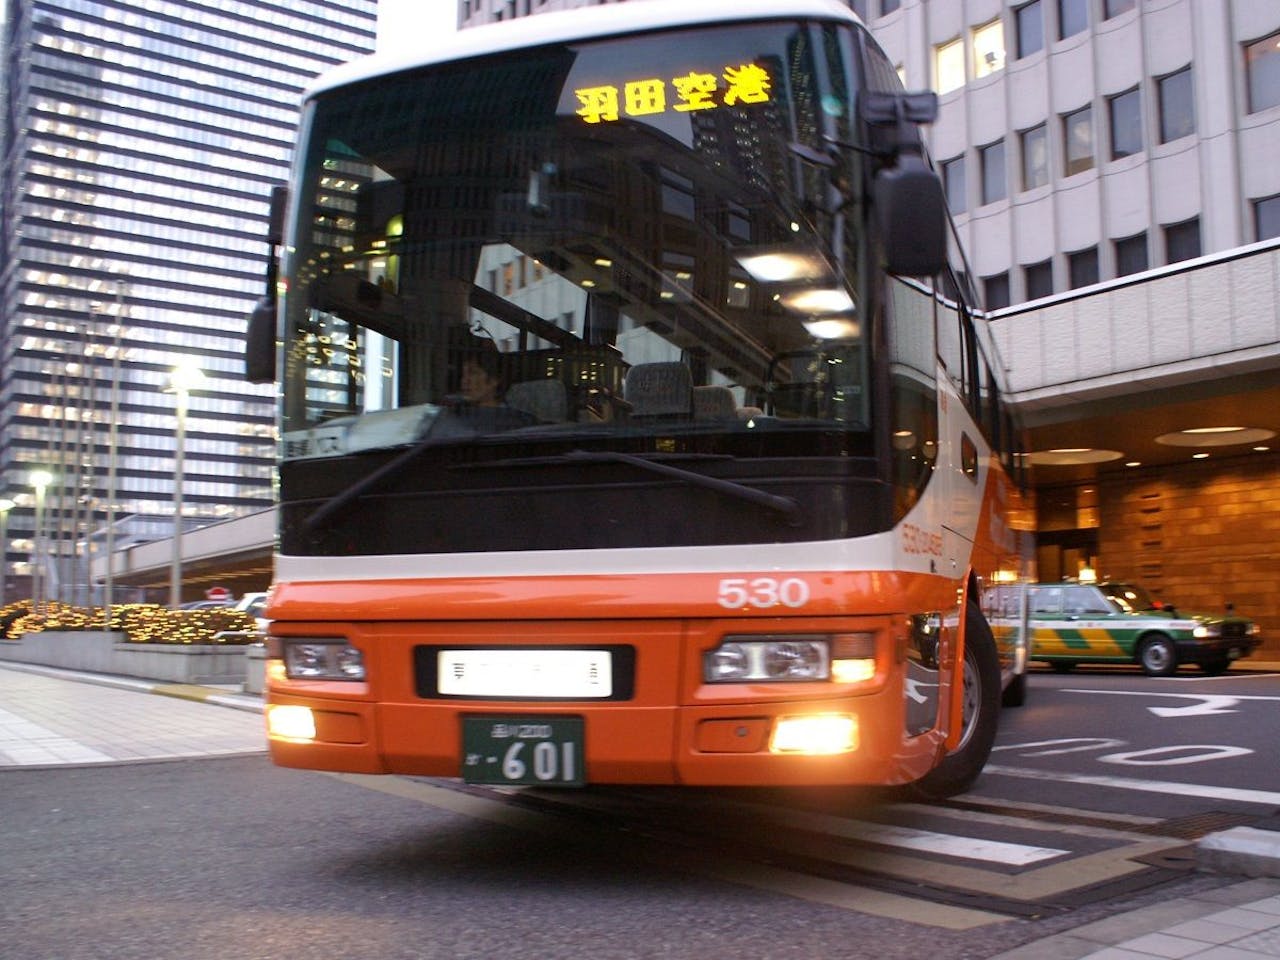 【京王プラザホテル】羽田・成田空港とホテル間の送迎用リムジンバス